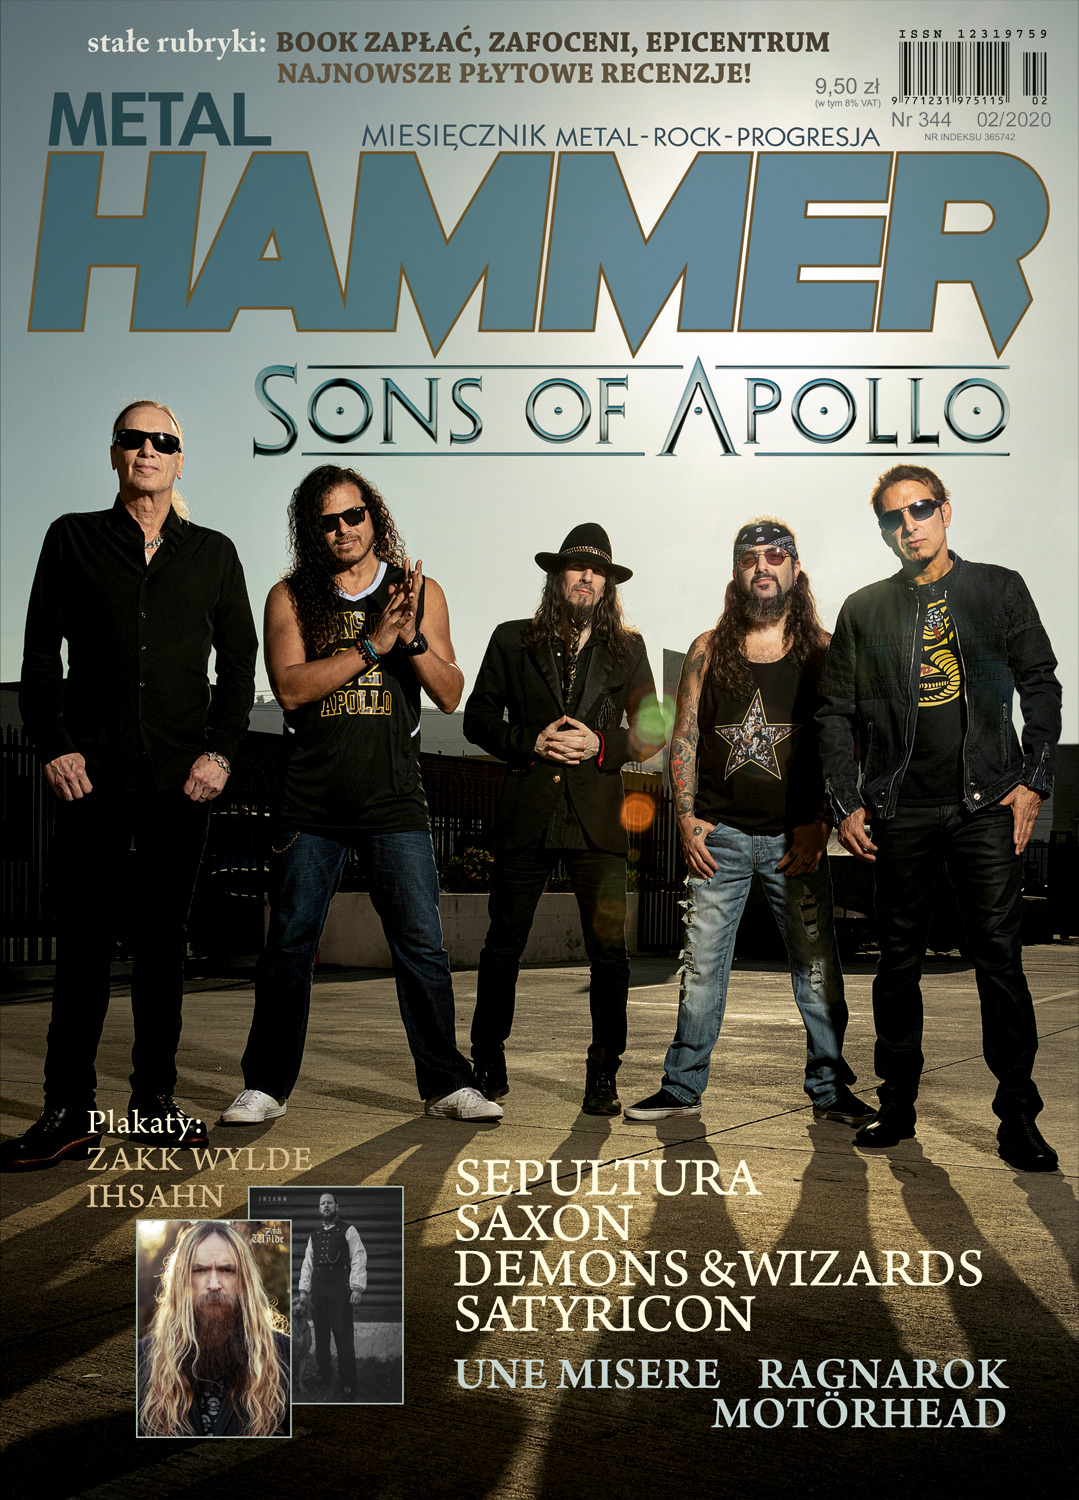 Lutowy Metal Hammer od dziś w sprzedaży